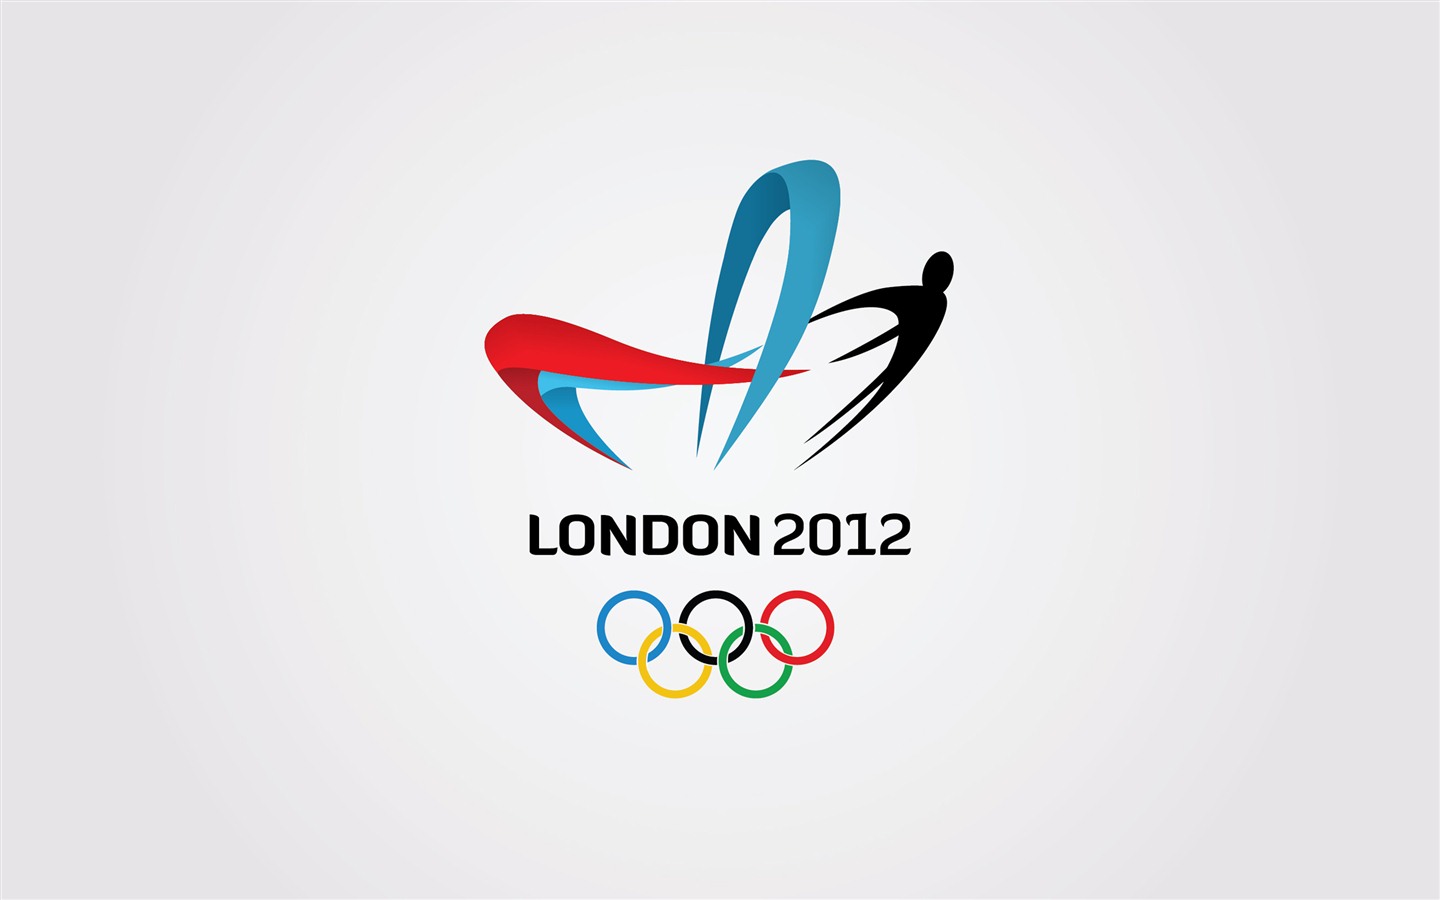 Londres 2012 Olimpiadas fondos temáticos (2) #25 - 1440x900